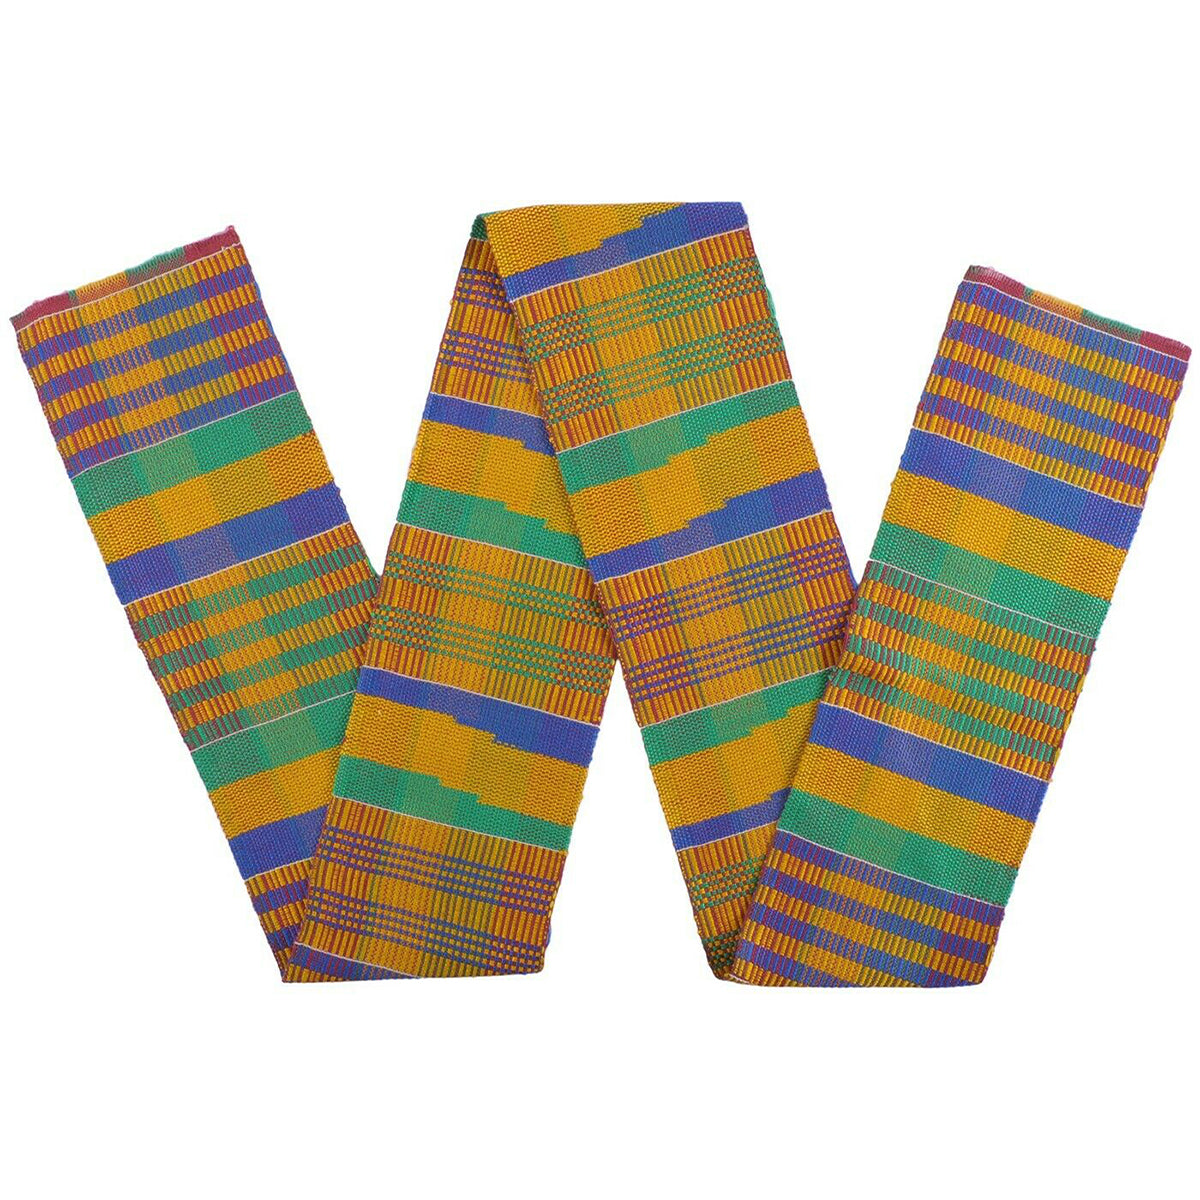 Африканский тканевый шарф ашанти кенте украл сотканное вручную подлинное искусство Ганы - Tribalgh